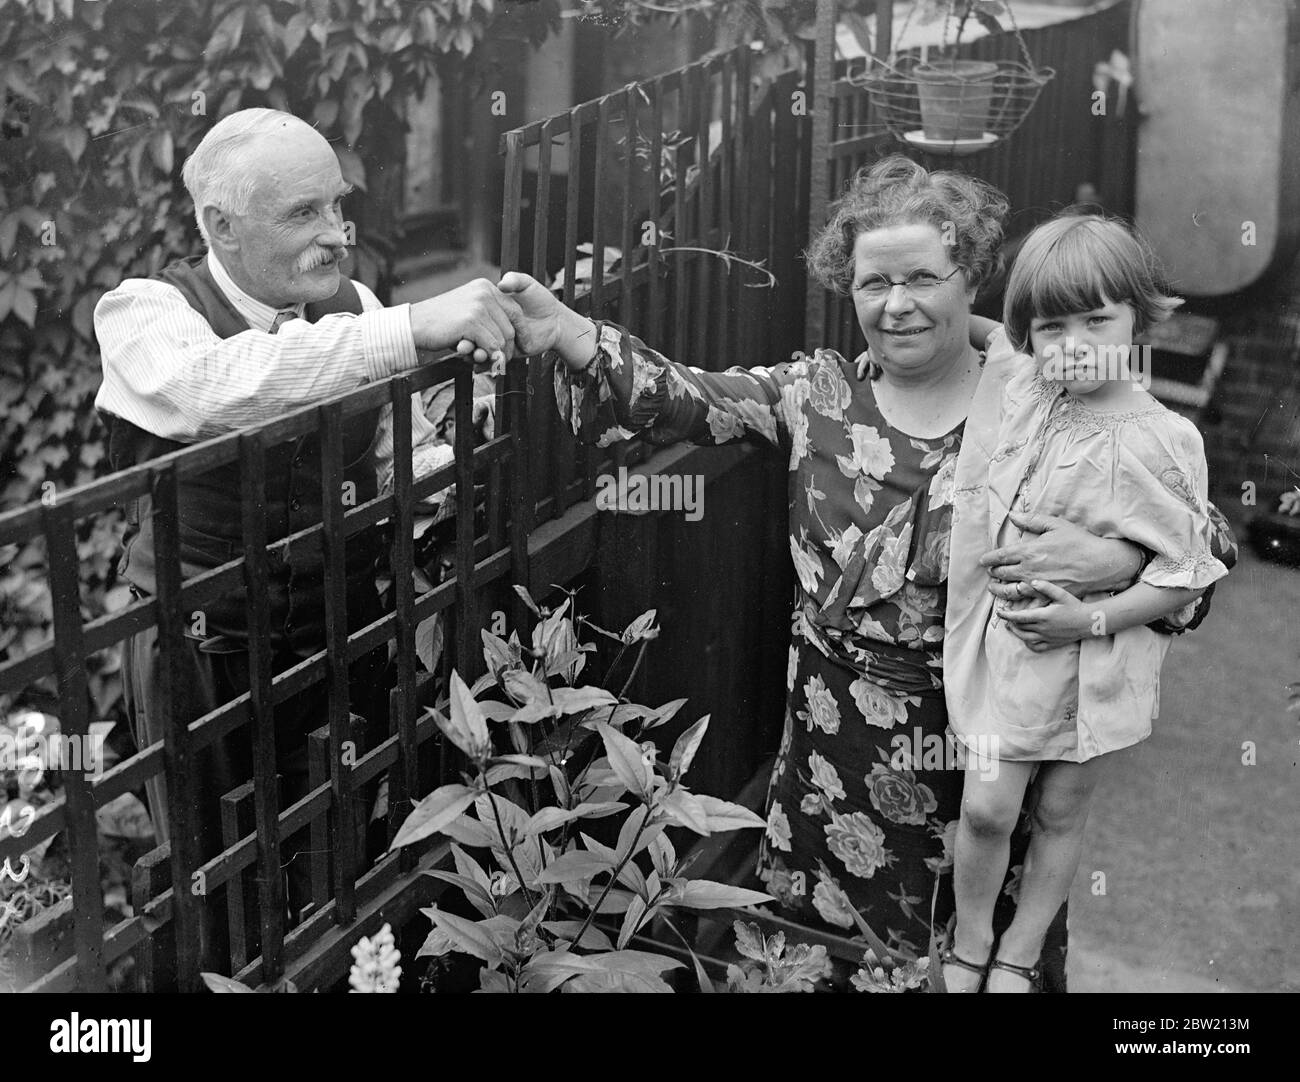 Frau Annie Taylor, die designierte Bürgermeisterin von East Ham, im Alter von 52 Jahren, hält ihre dreijährige Enkeltochter Thelma Taylor und erhält Glückwünsche von einer Nachbarin. Sie verließ die Schule, als sie 13 war, um Hausangestellte zu werden und wird nun die erste Bürgermeisterin des Bezirks sein. Sie hat sich selbst ausgebildet, sagt sie über das Muster der wohlhabenden Menschen, in deren Häusern sie arbeitete. 15 Juli 1937. Stockfoto